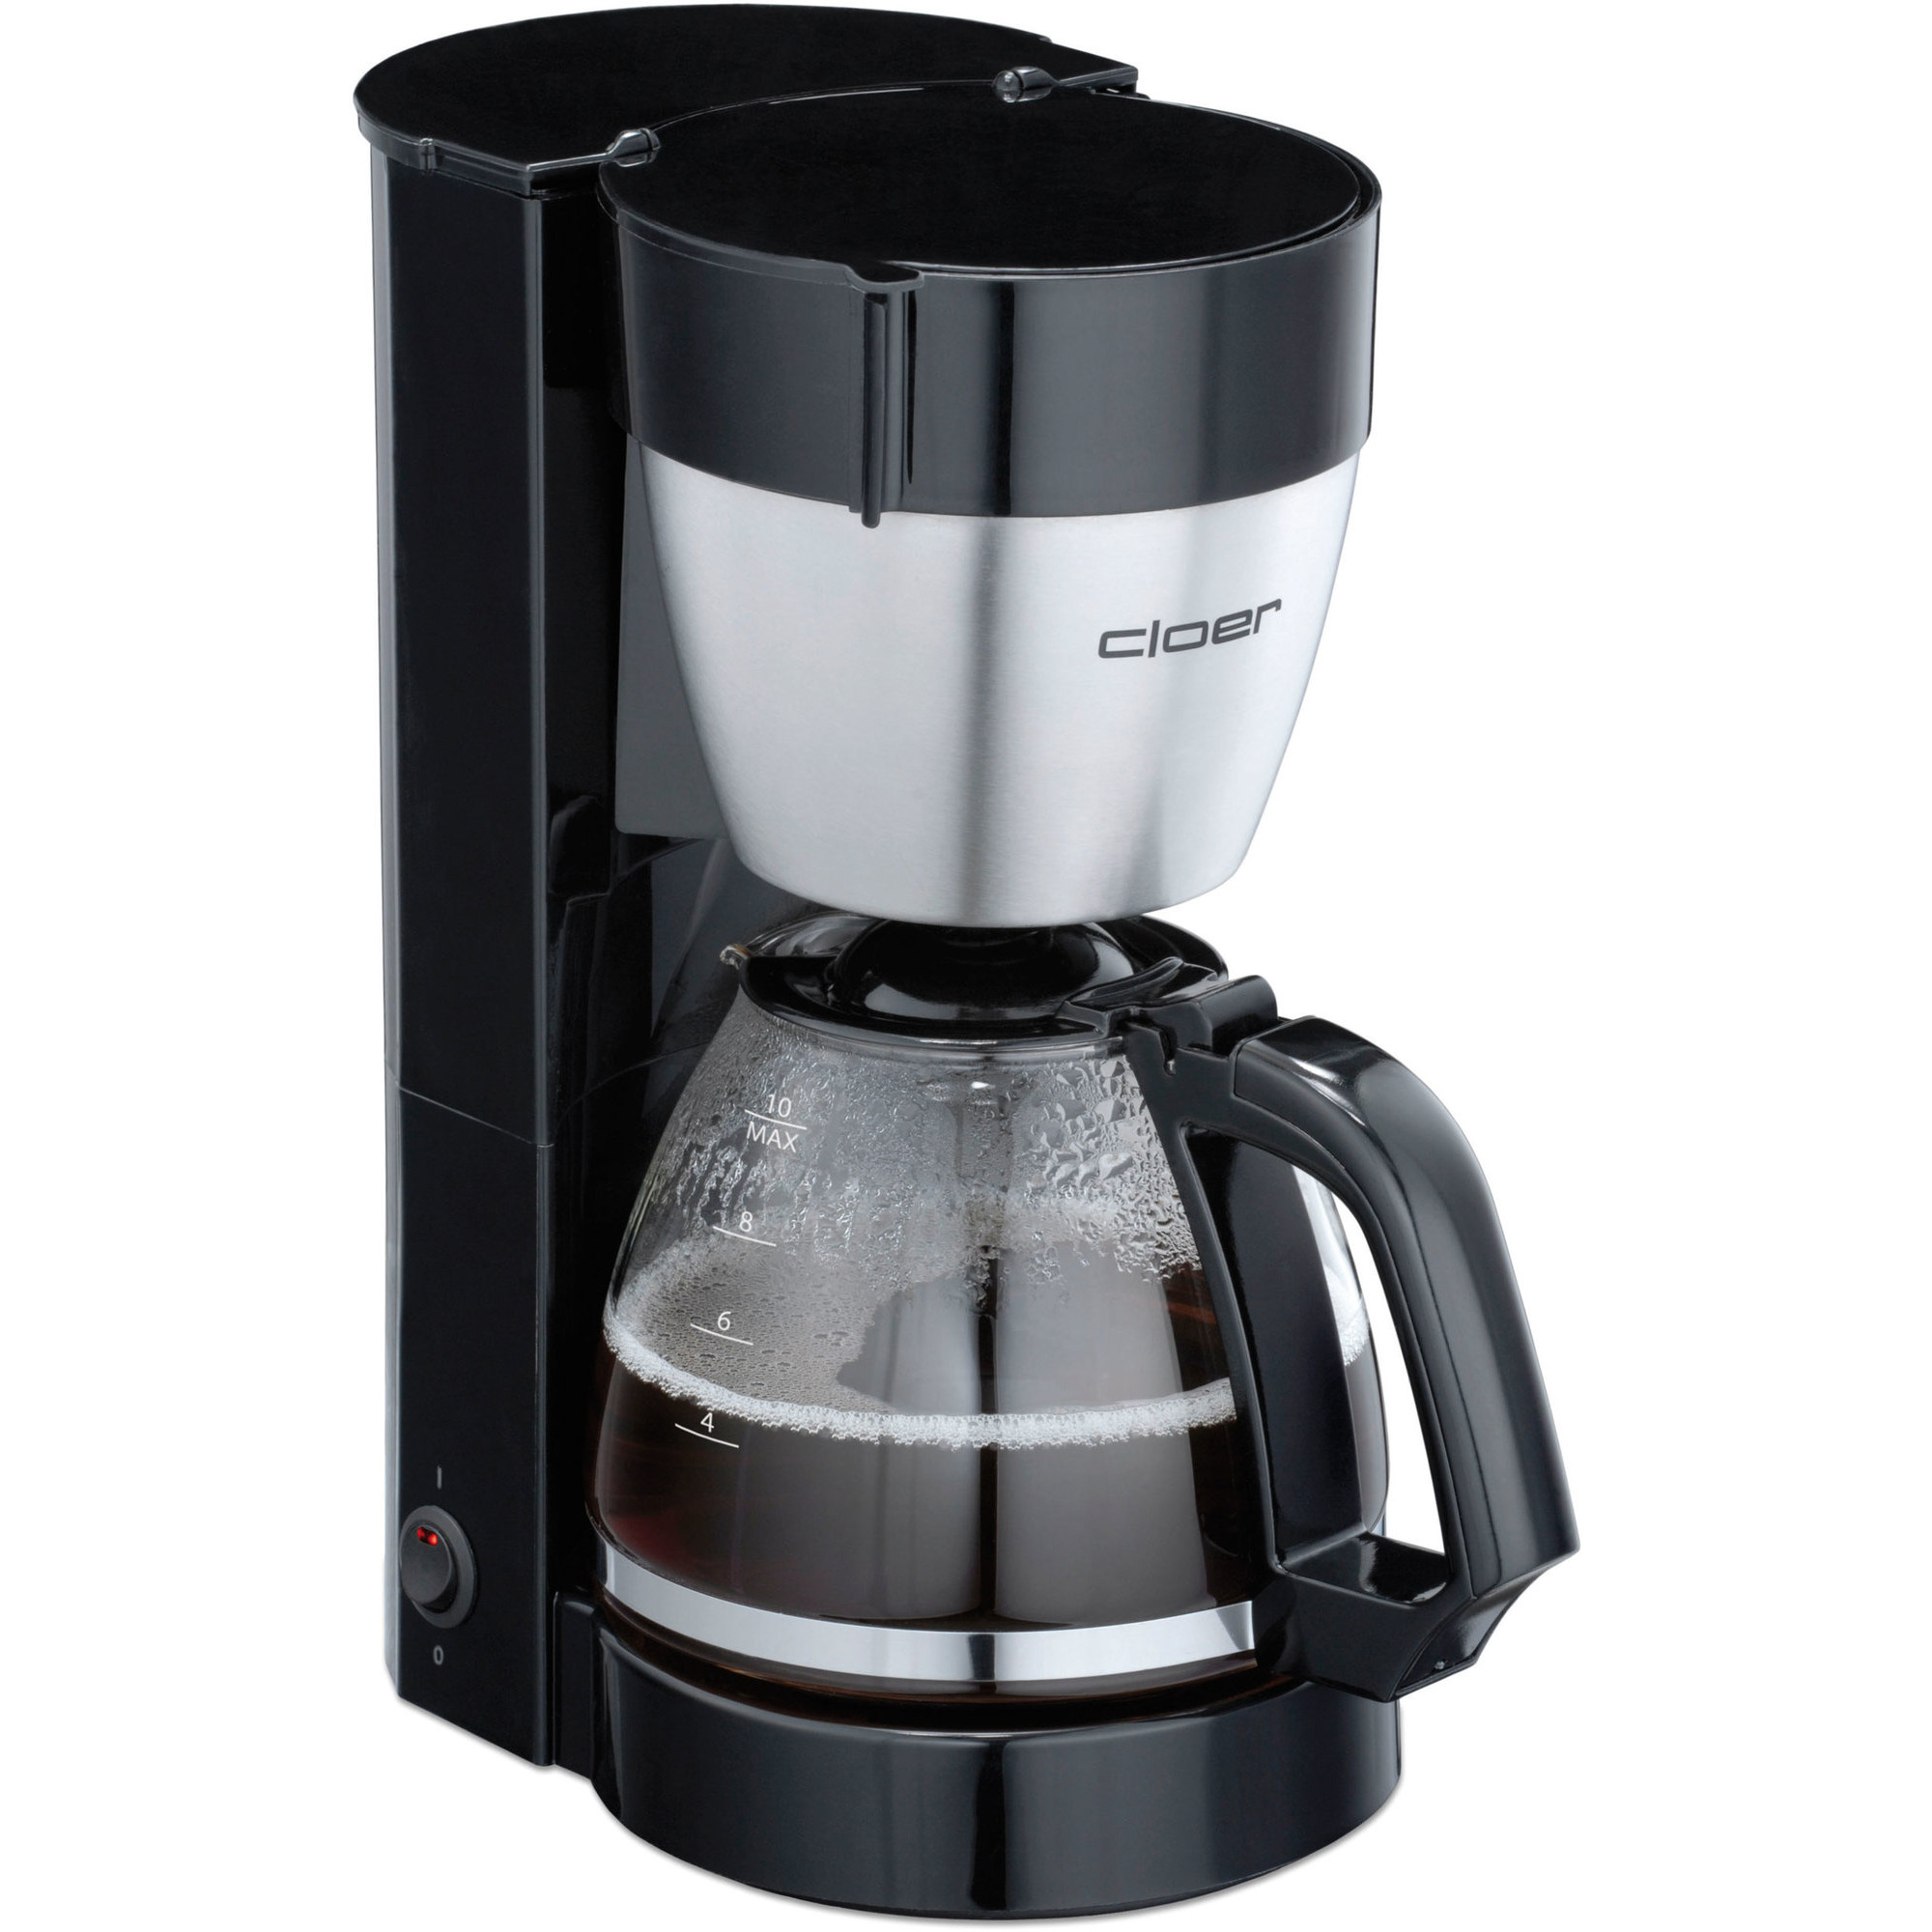 Cloer Kaffemaskine til 10 kopper